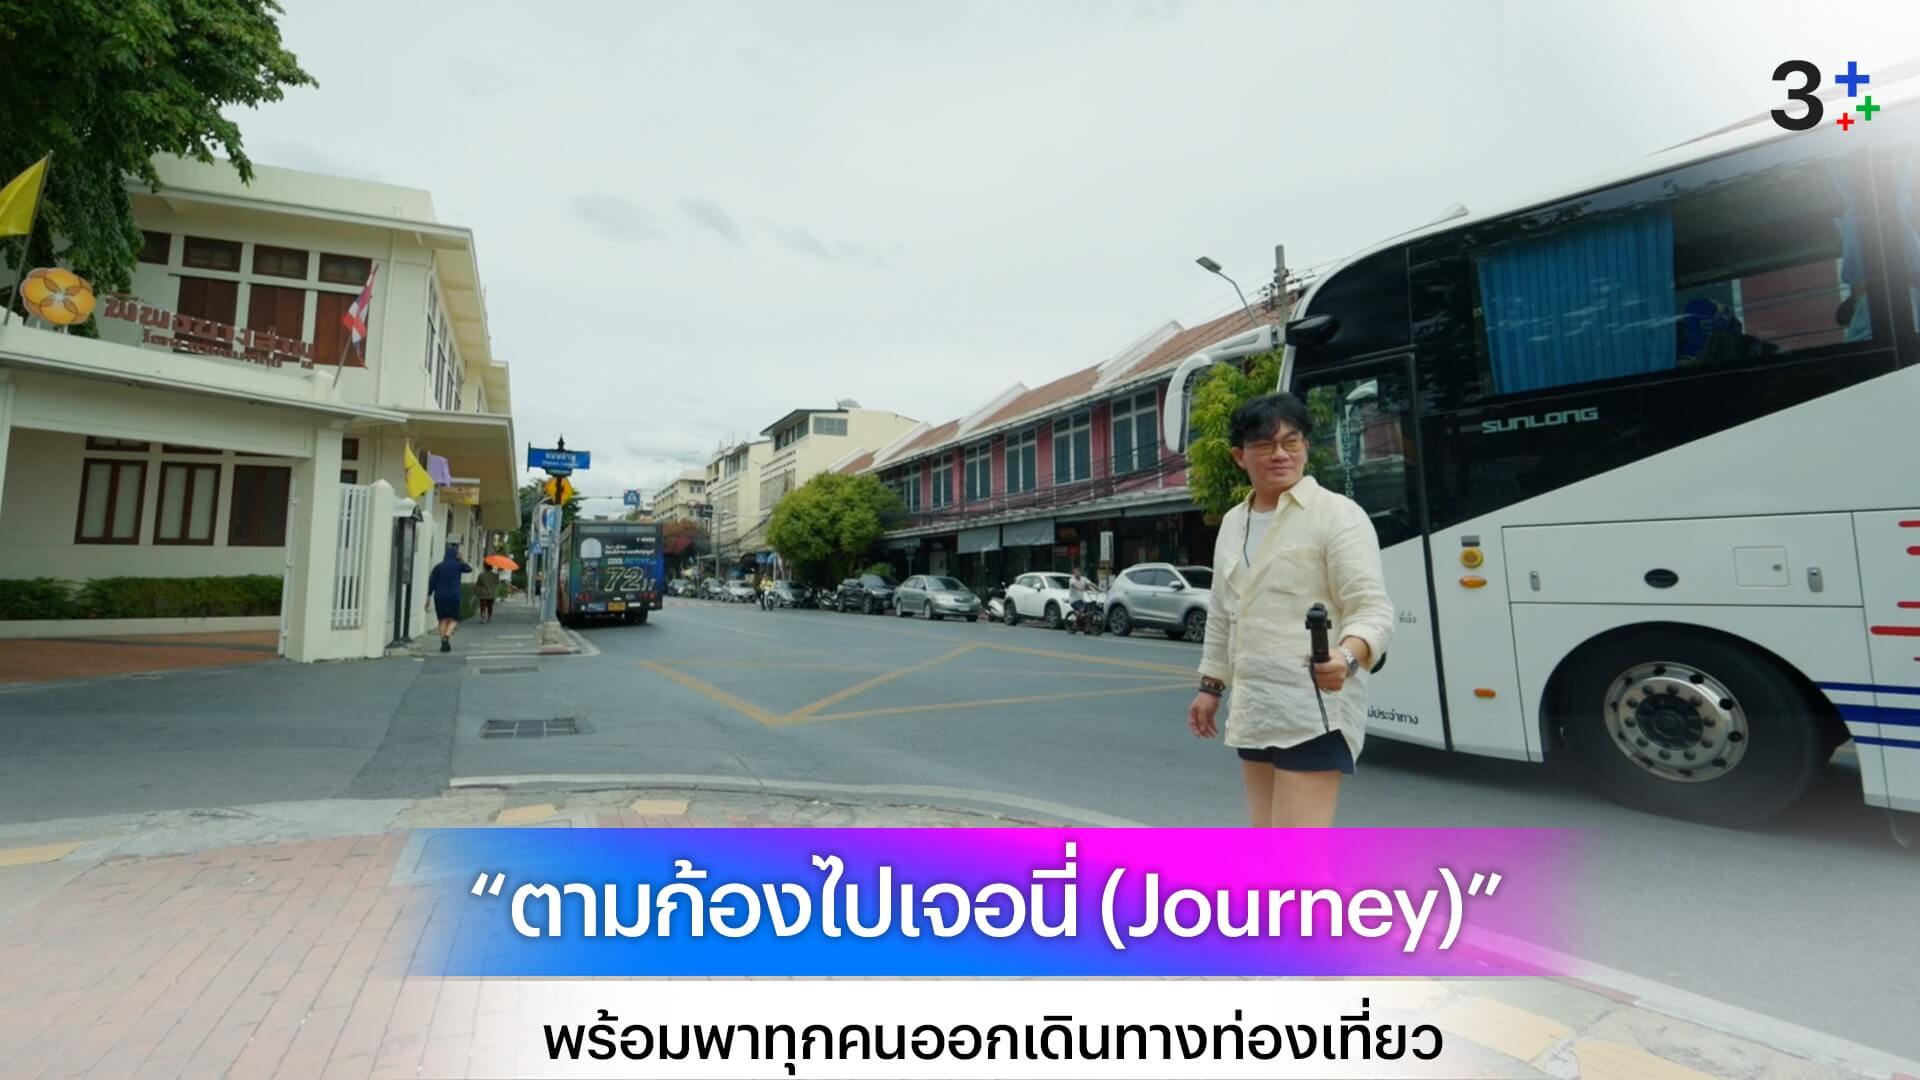 “ก้อง ปิยะ” เปิดตัวรายการใหม่ “ตามก้องไปเจอนี่ (Journey)” พร้อมพาทุกคนออกเดินทางท่องเที่ยวทั่วไทย 6 กรกฎาคม ทาง ช่อง 3